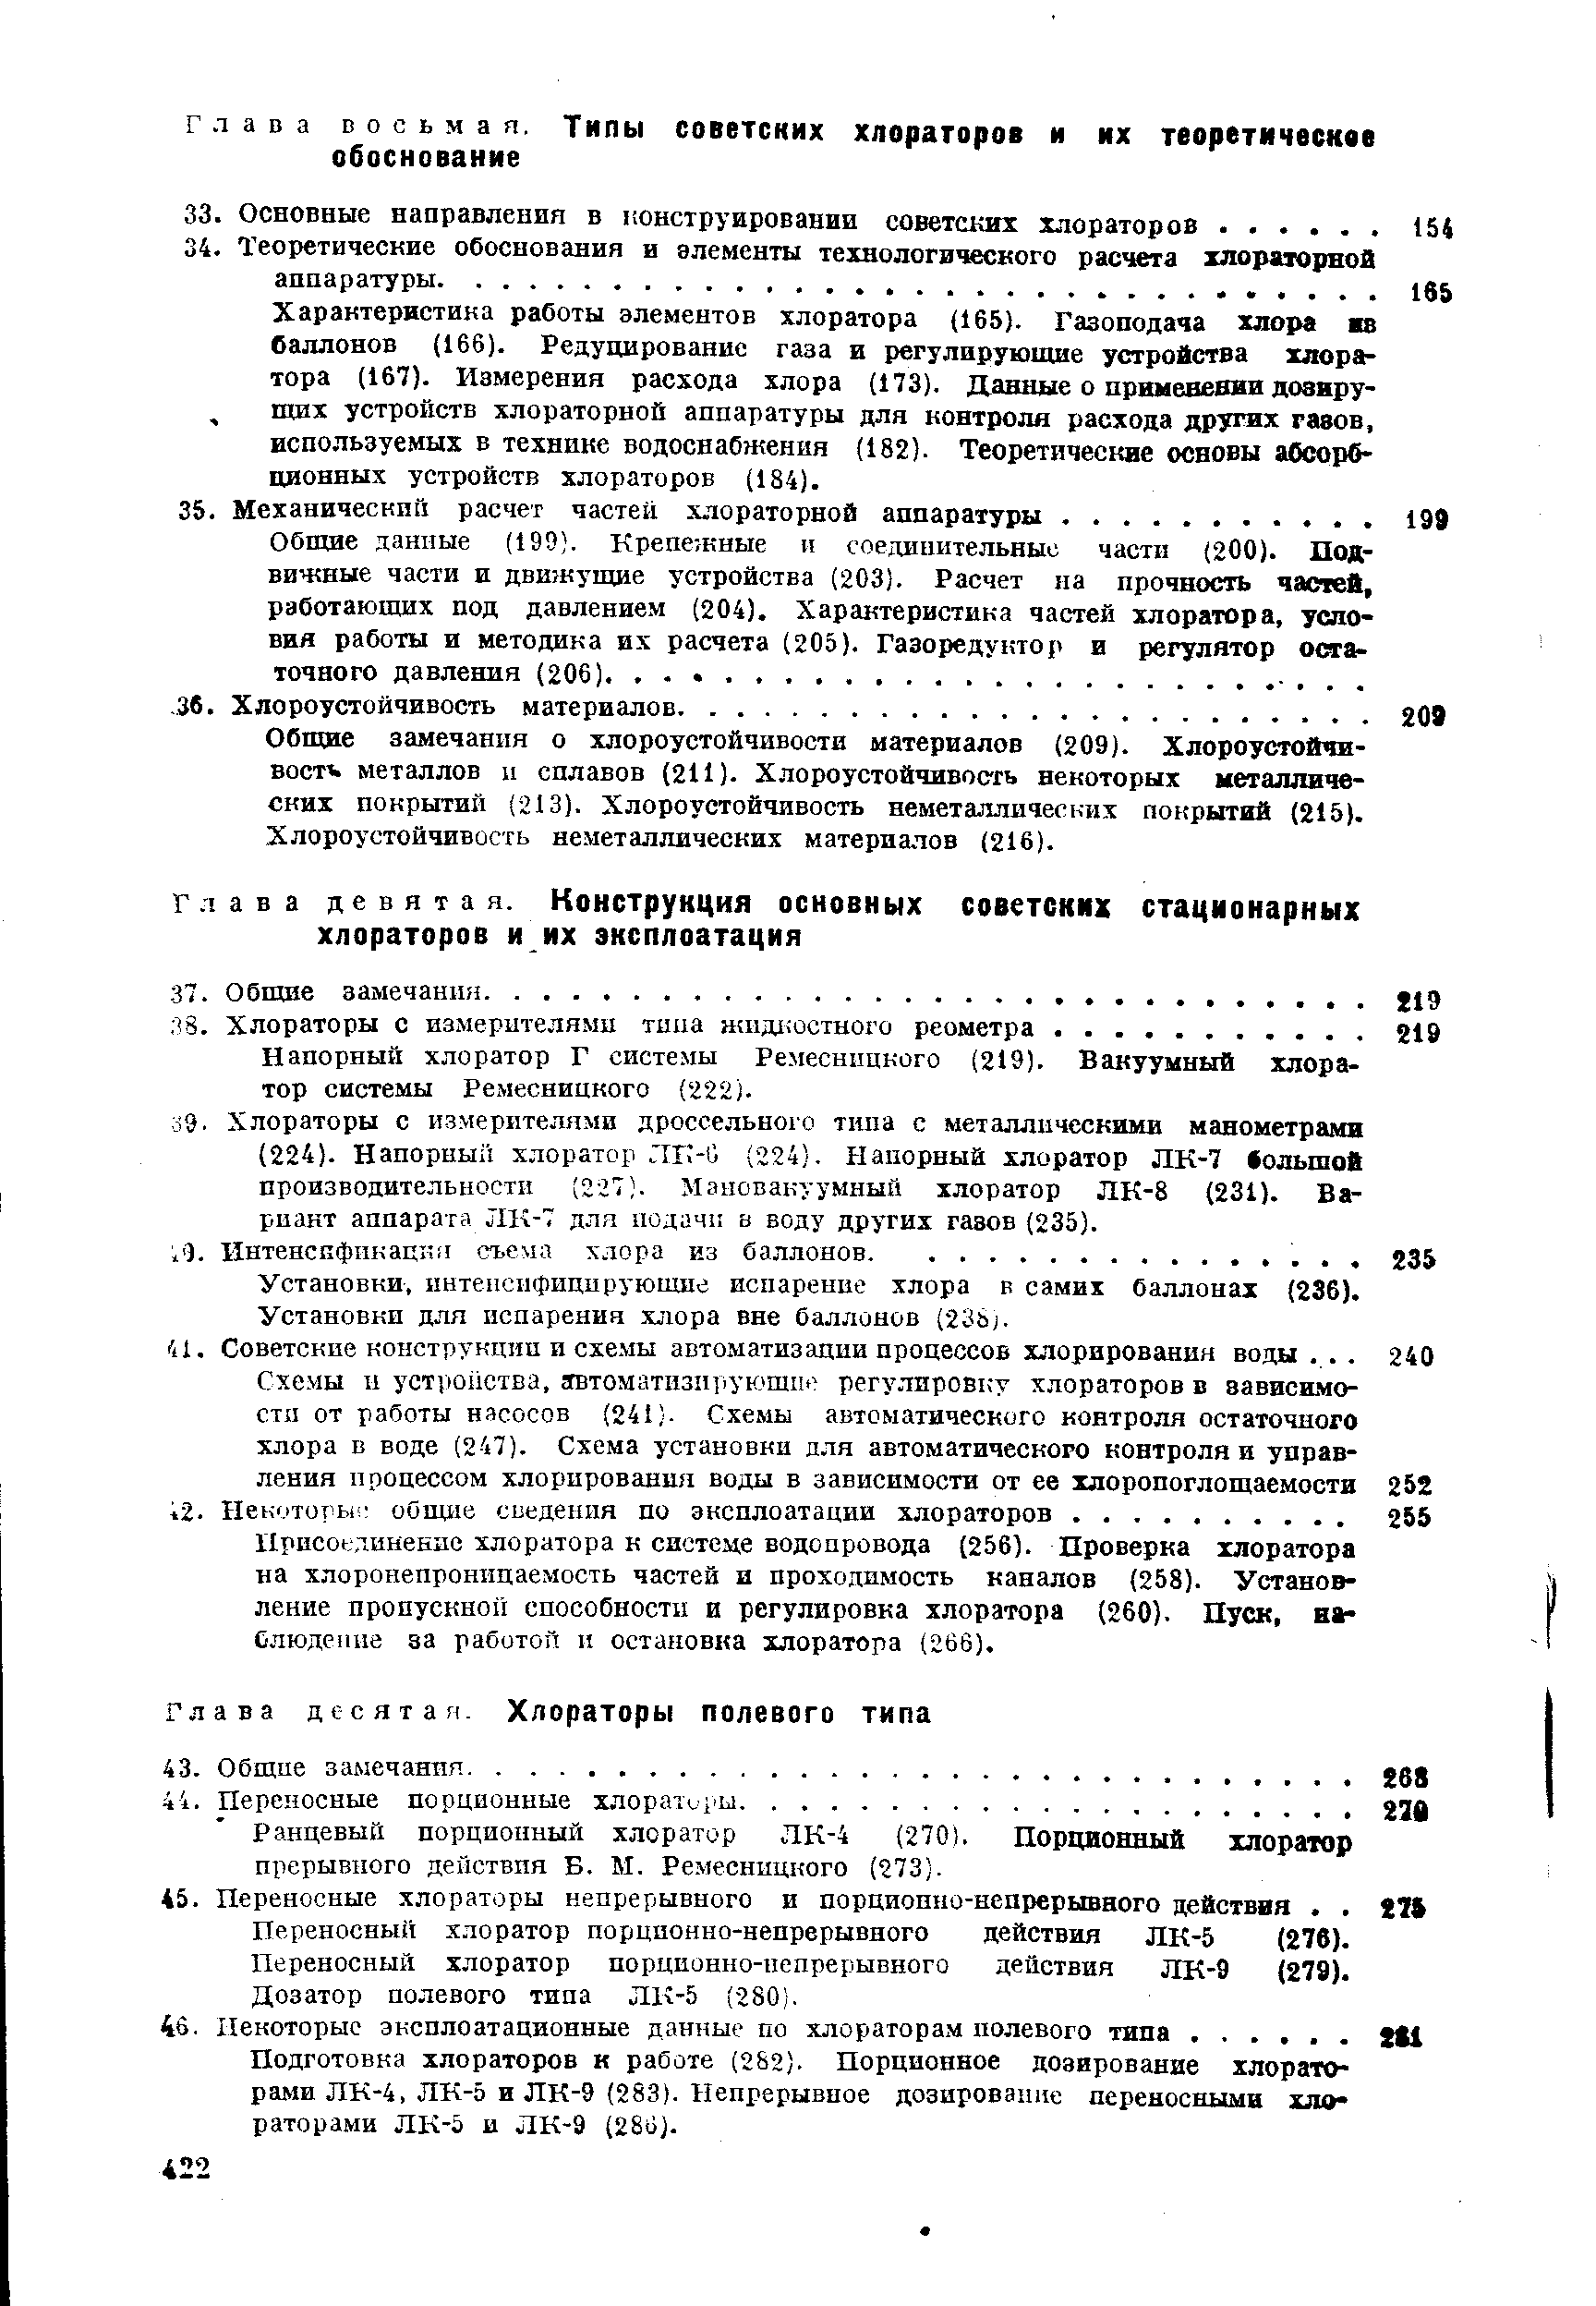 Напорный хлоратор Г системы Ремесницкого (219). Вакуумный хлоратор системы Ремесницкого (222).